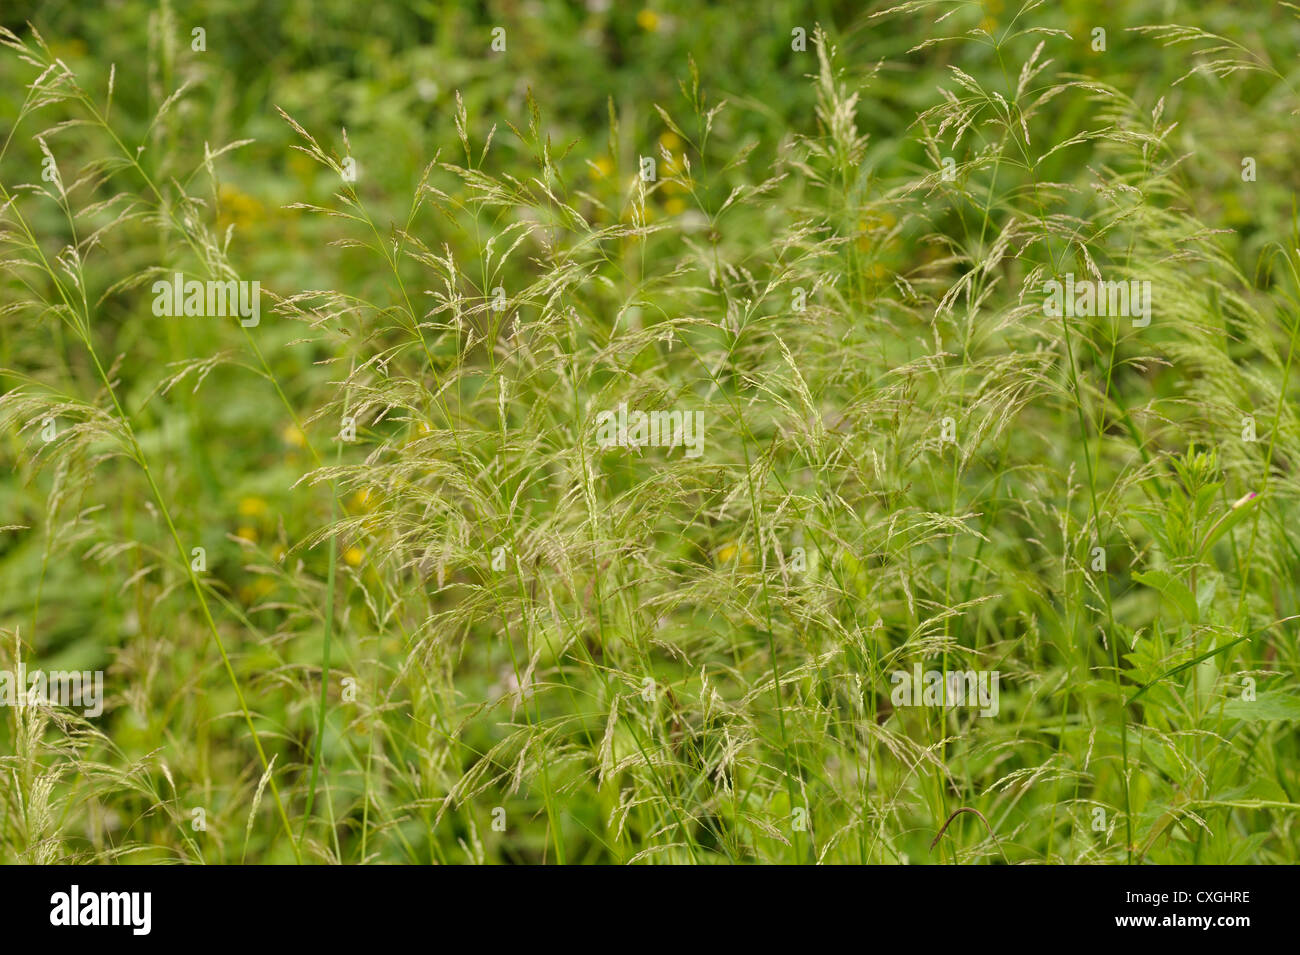 Tufted Hair-grass, Deschampsia cespitosa Stock Photo